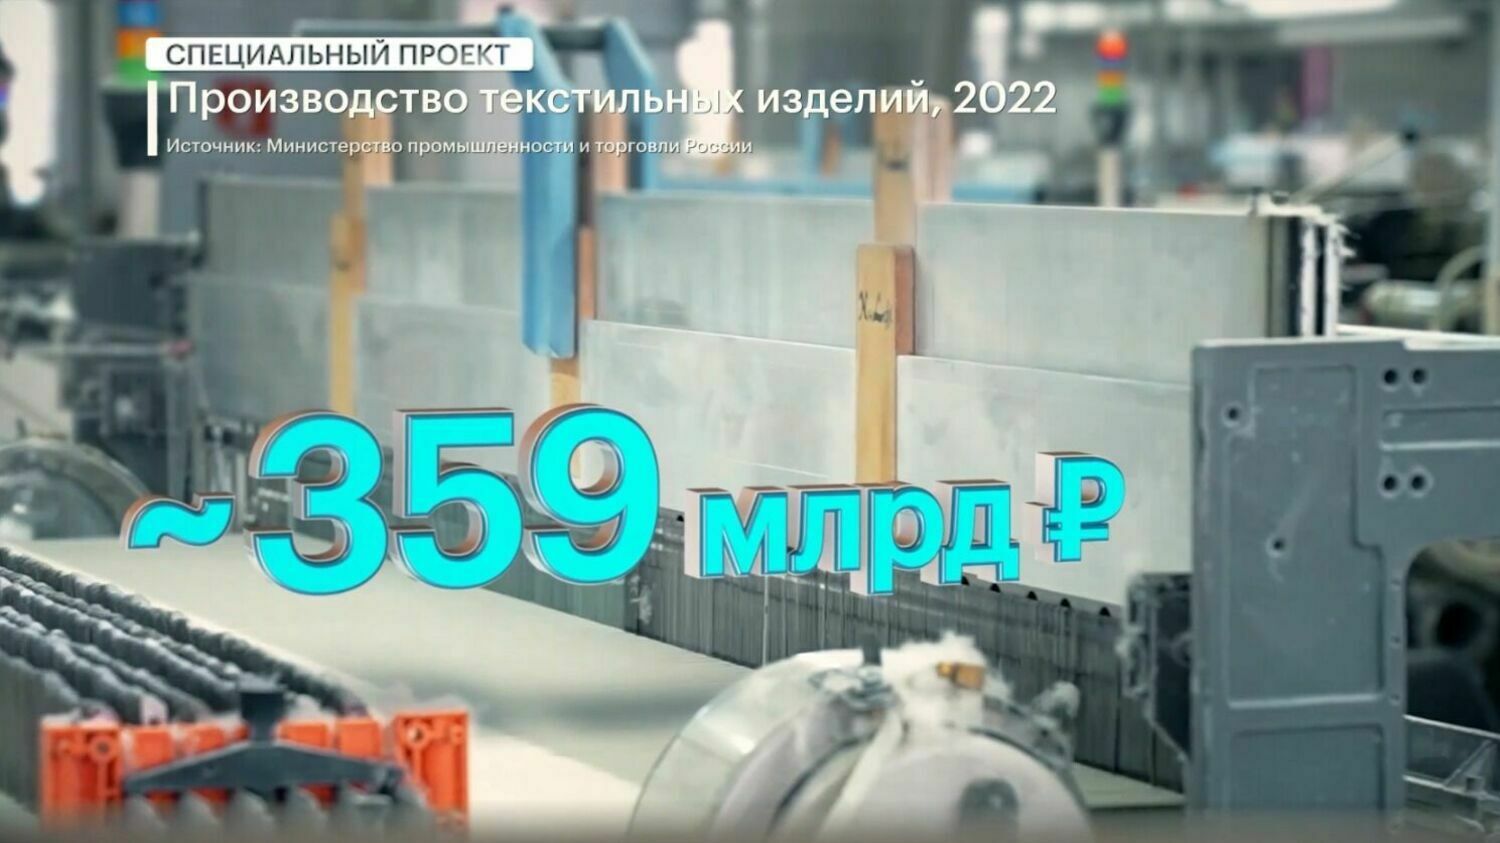 Все производство текстильных предприятий России оценивают, примерно, в 359 млн руб